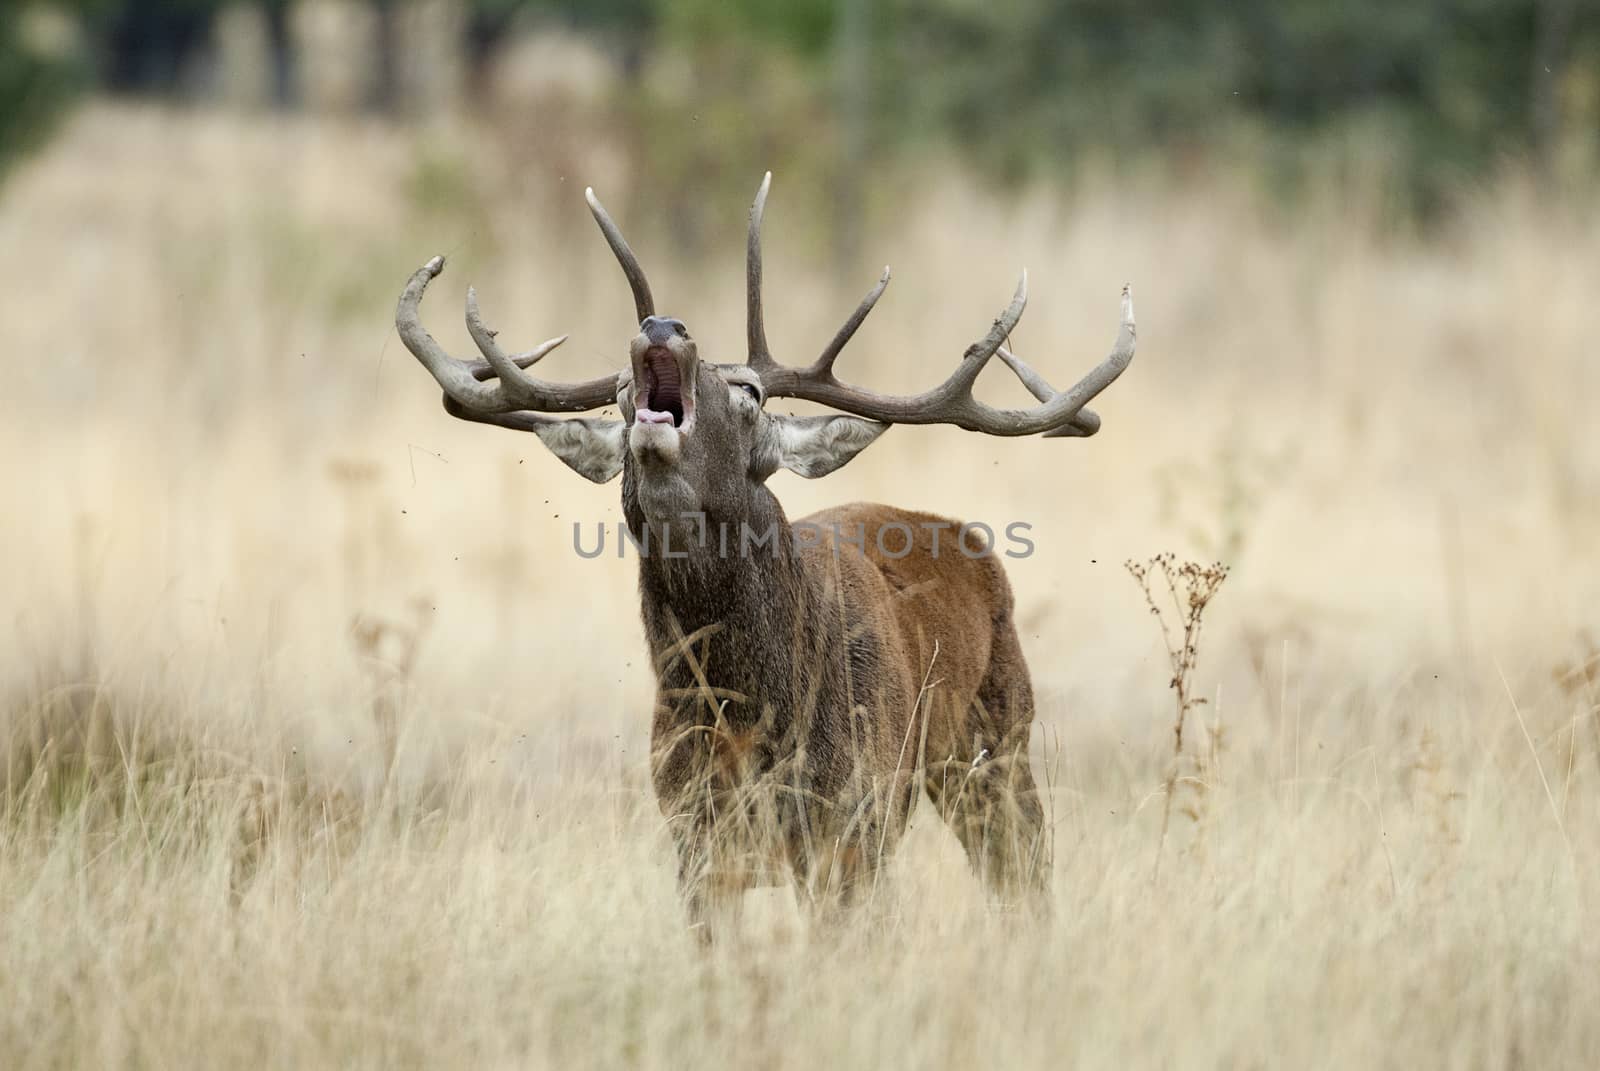 Red Deer, Deers, Cervus elaphus - Rut time, stag, Red deer roari by jalonsohu@gmail.com